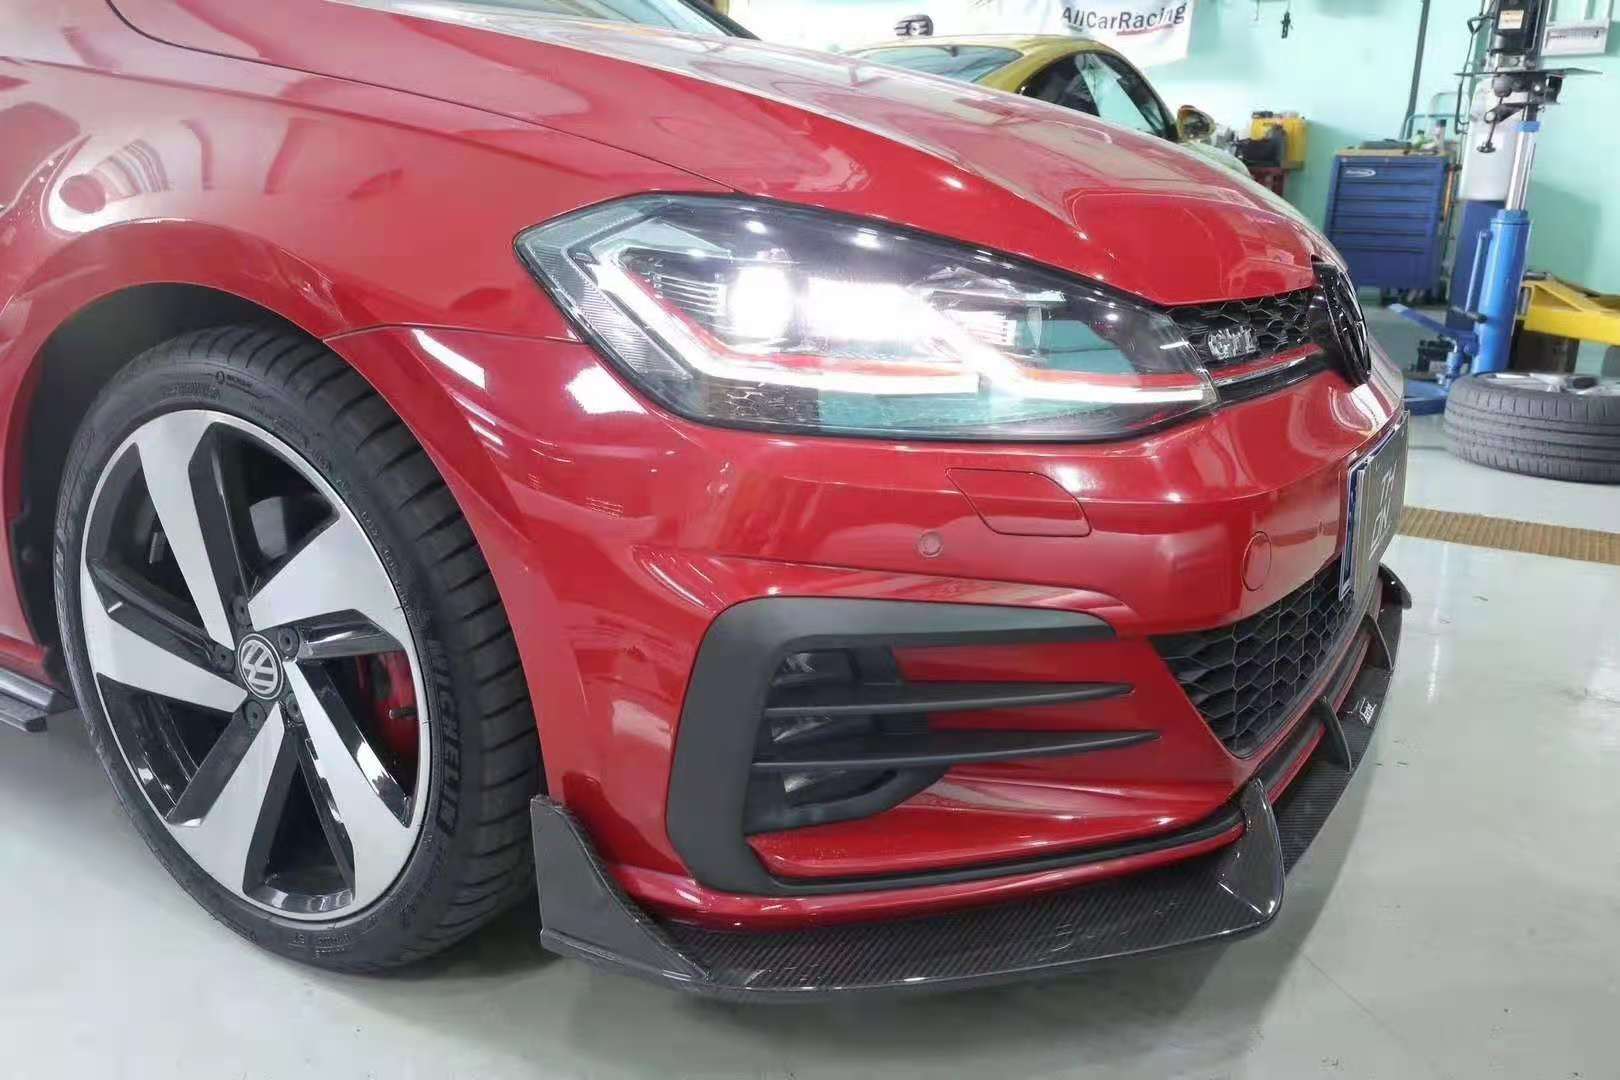 Karbel Carbon Dry Carbon Fiber Front Lip for Volkswagen Golf GTI MK7.5